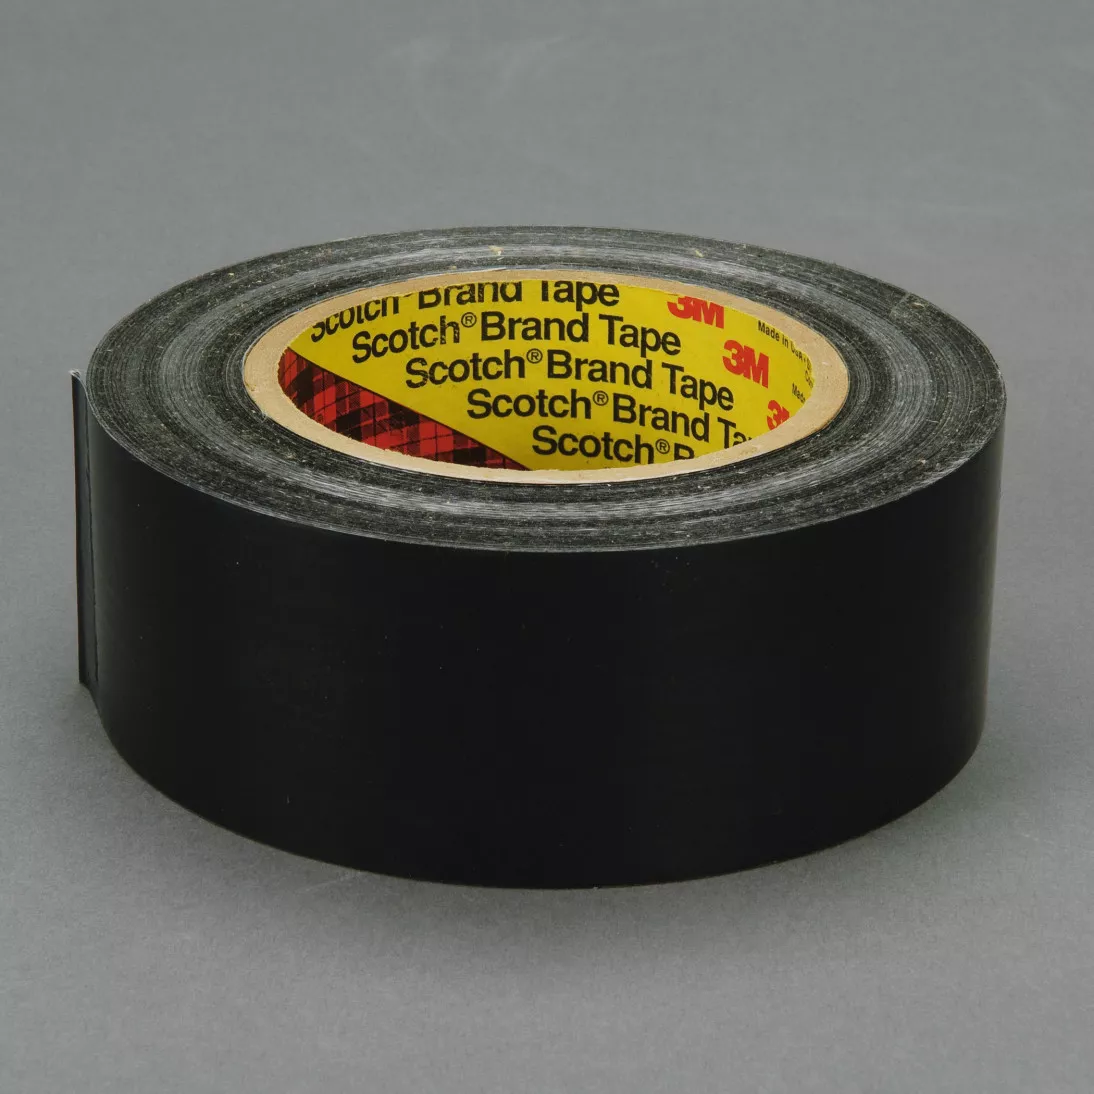 Scotch® Filament Tape 890MSR, Black, 18 mm x 55 m, 8 mil, 48 rolls per
case